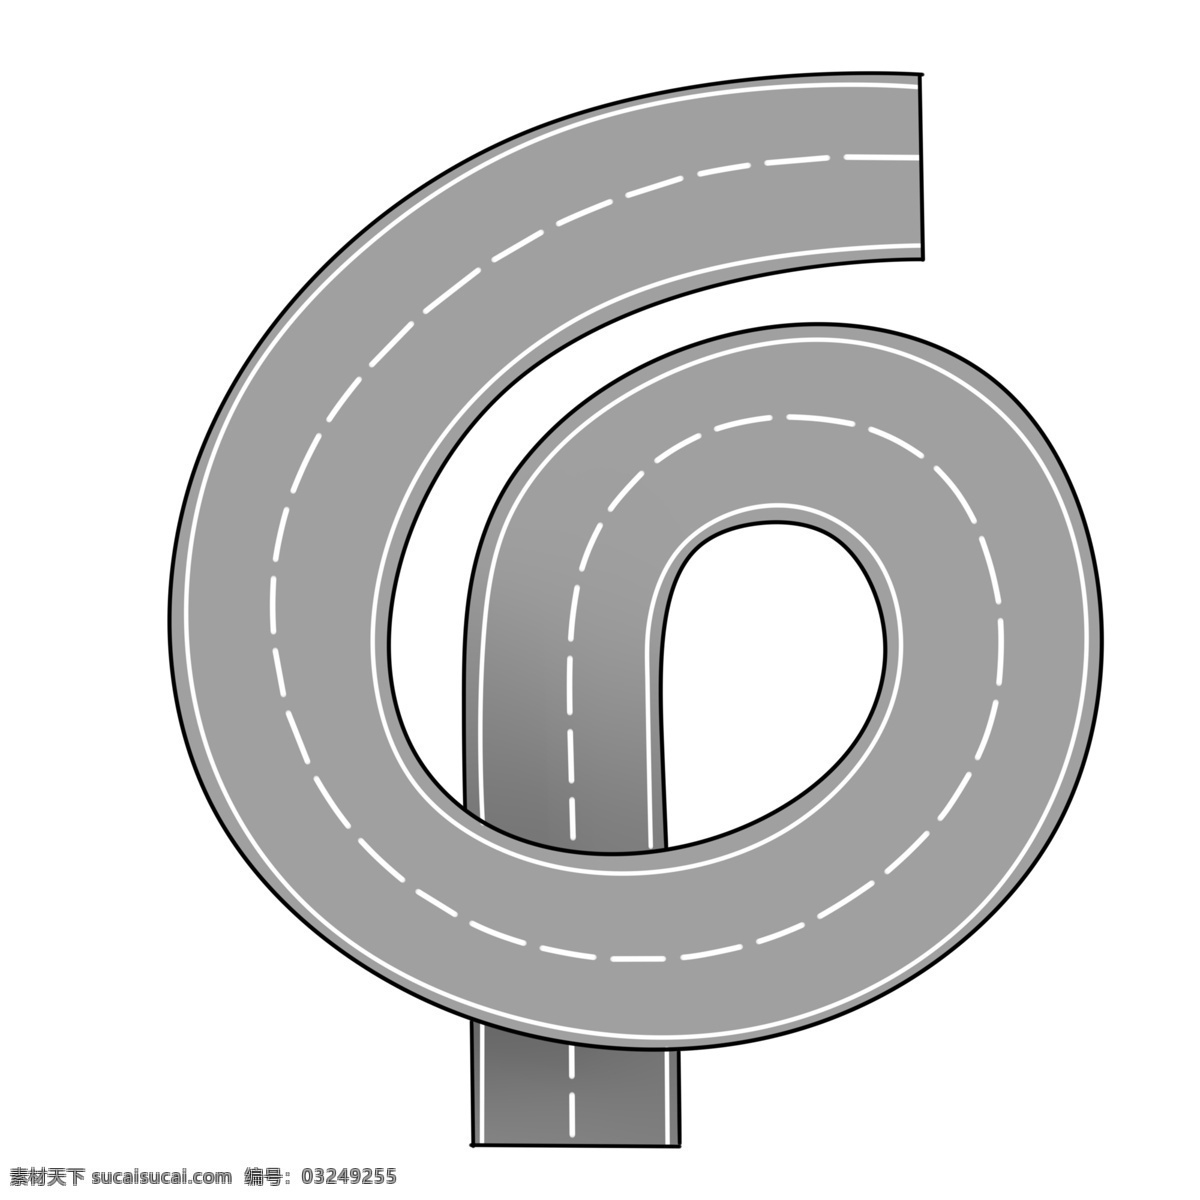 弯曲 环绕 马路 插画 柏油马路 弯曲的马路 环绕马路 环绕的公路 马路插图 马路插画 路